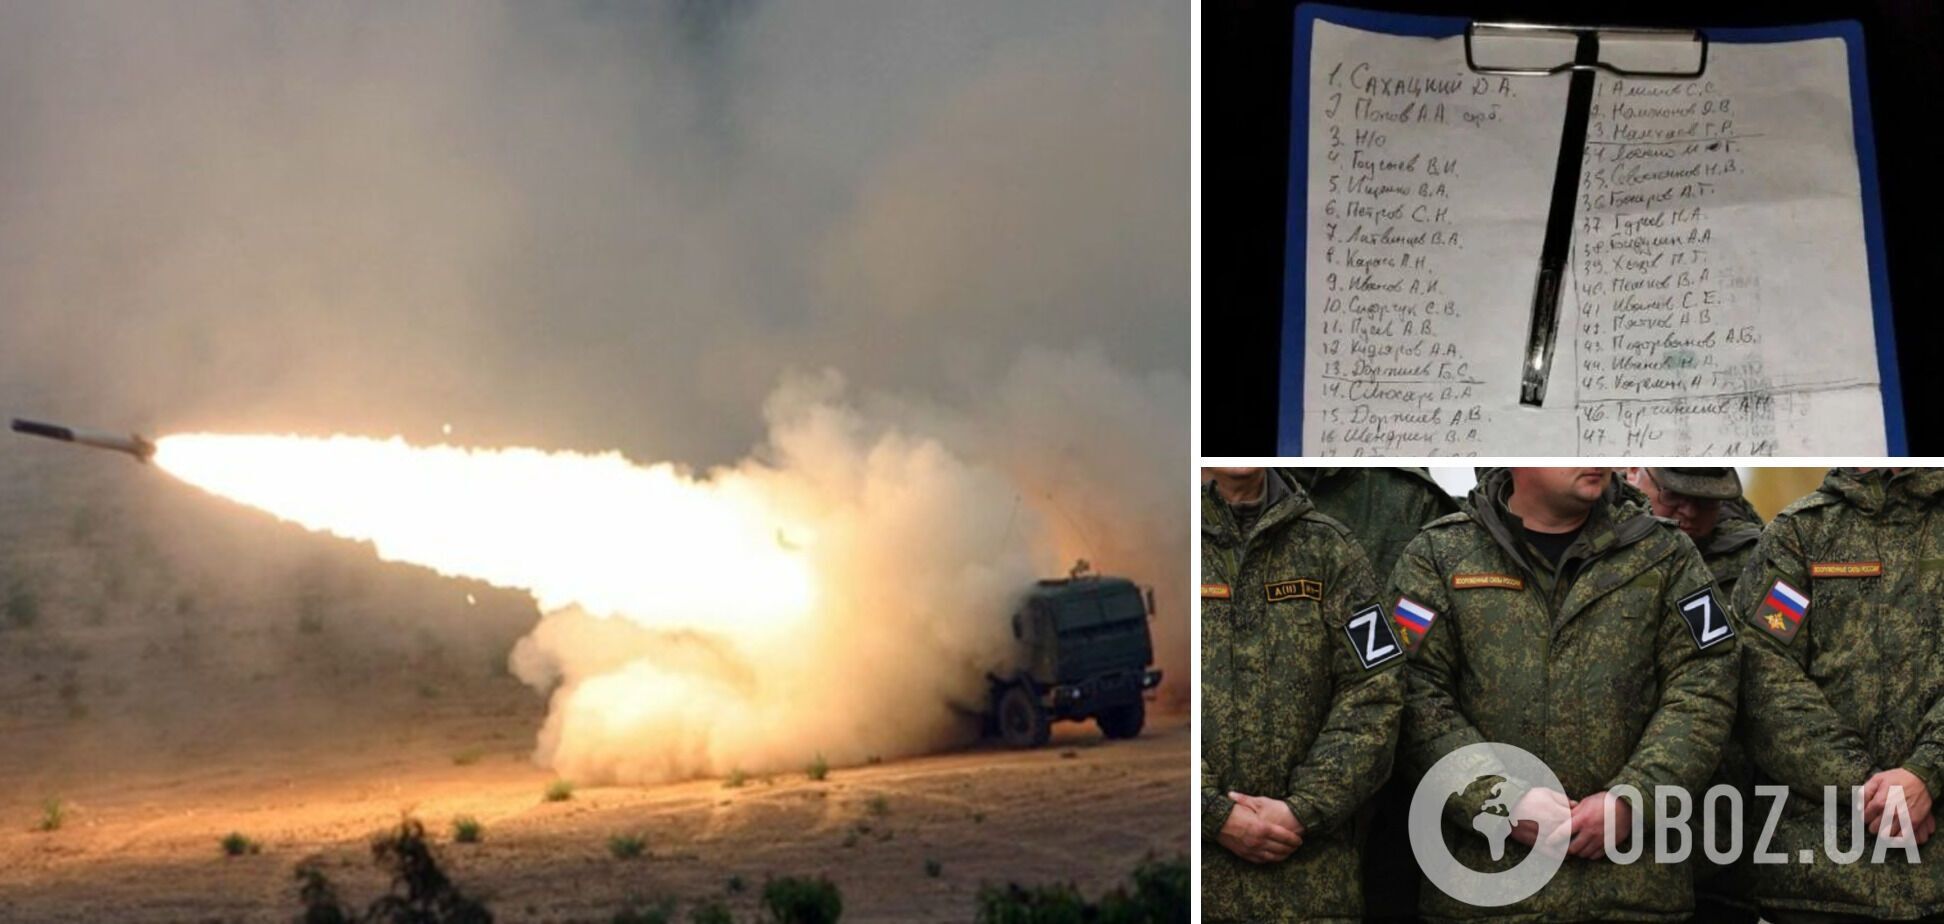 Удар был такой силы, что разлетелось все: новые детали атаки ВСУ на полигон оккупантов в Донецкой области и список ликвидированных. Фото